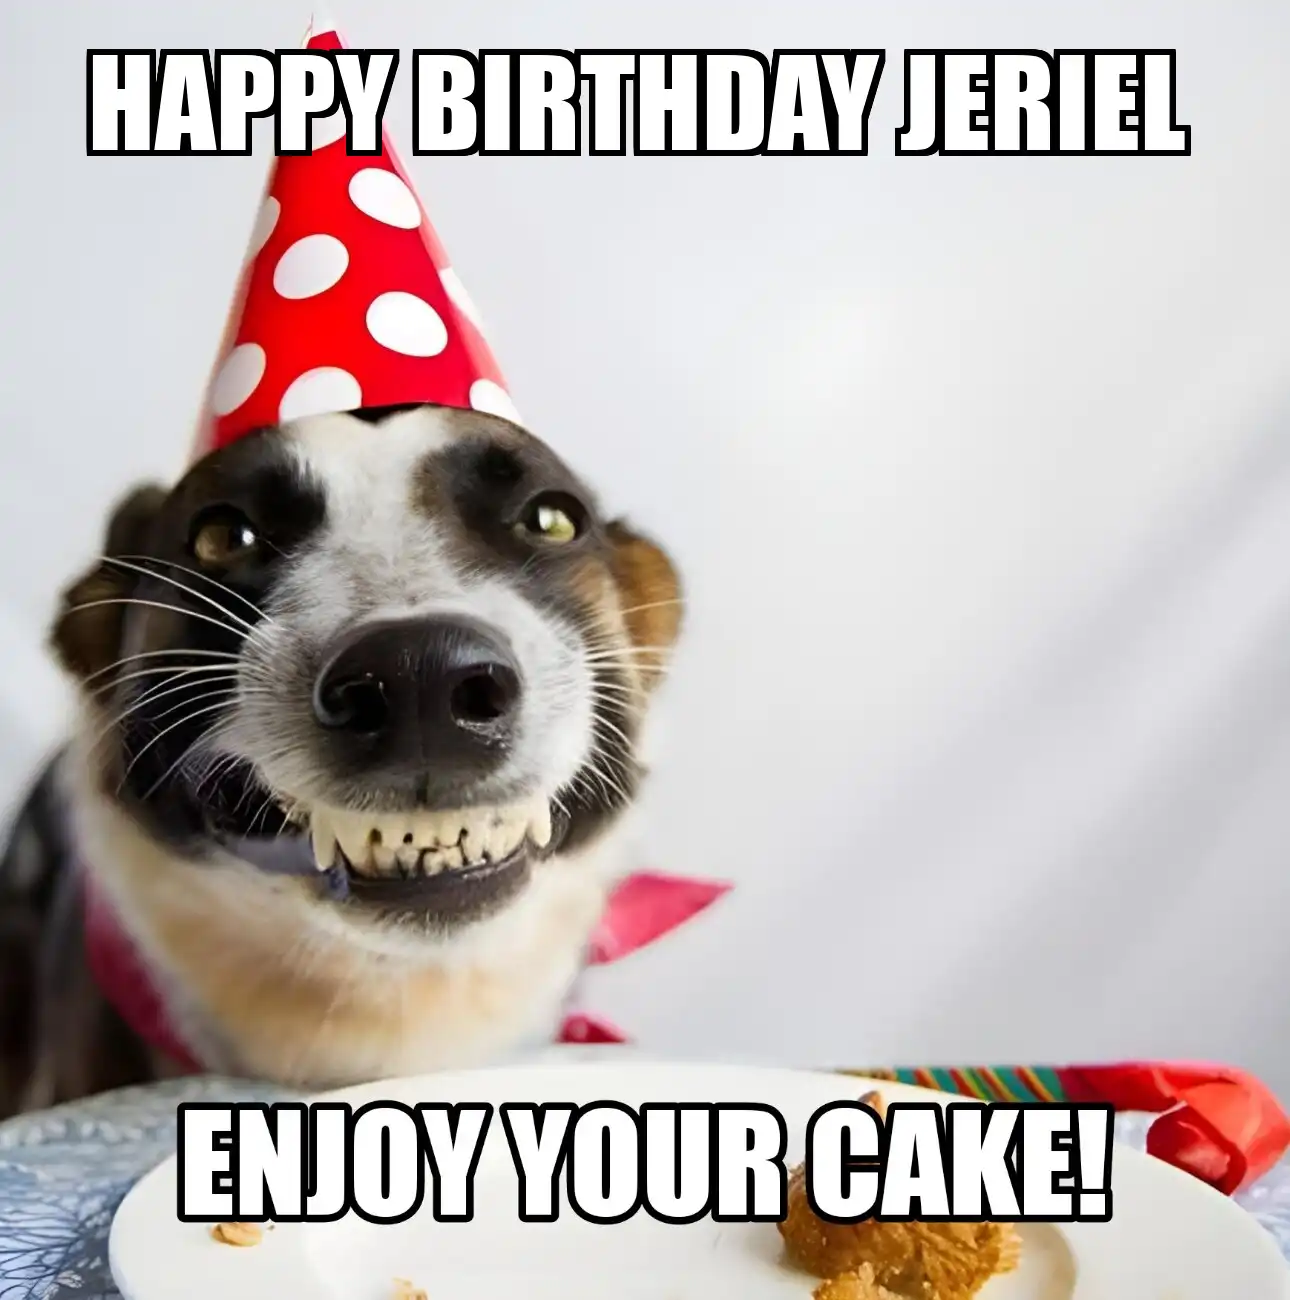 Happy Birthday Jeriel Enjoy Your Cake Dog Meme